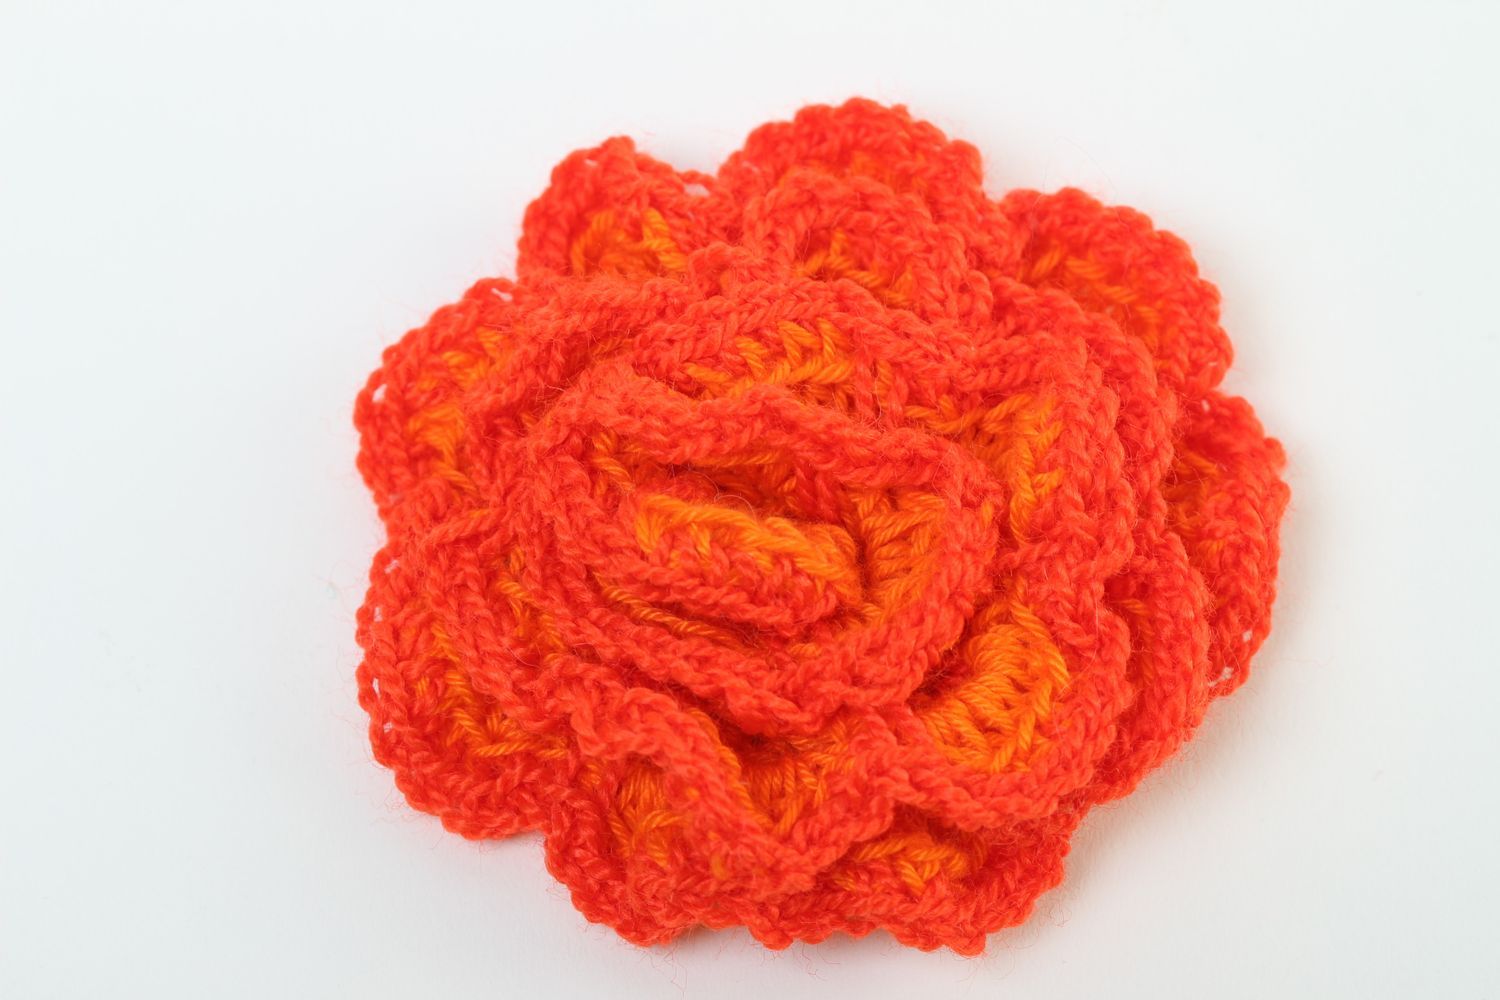 Handmade jewelry supplies crocheted flower crochet flower hair clips supplies photo 2